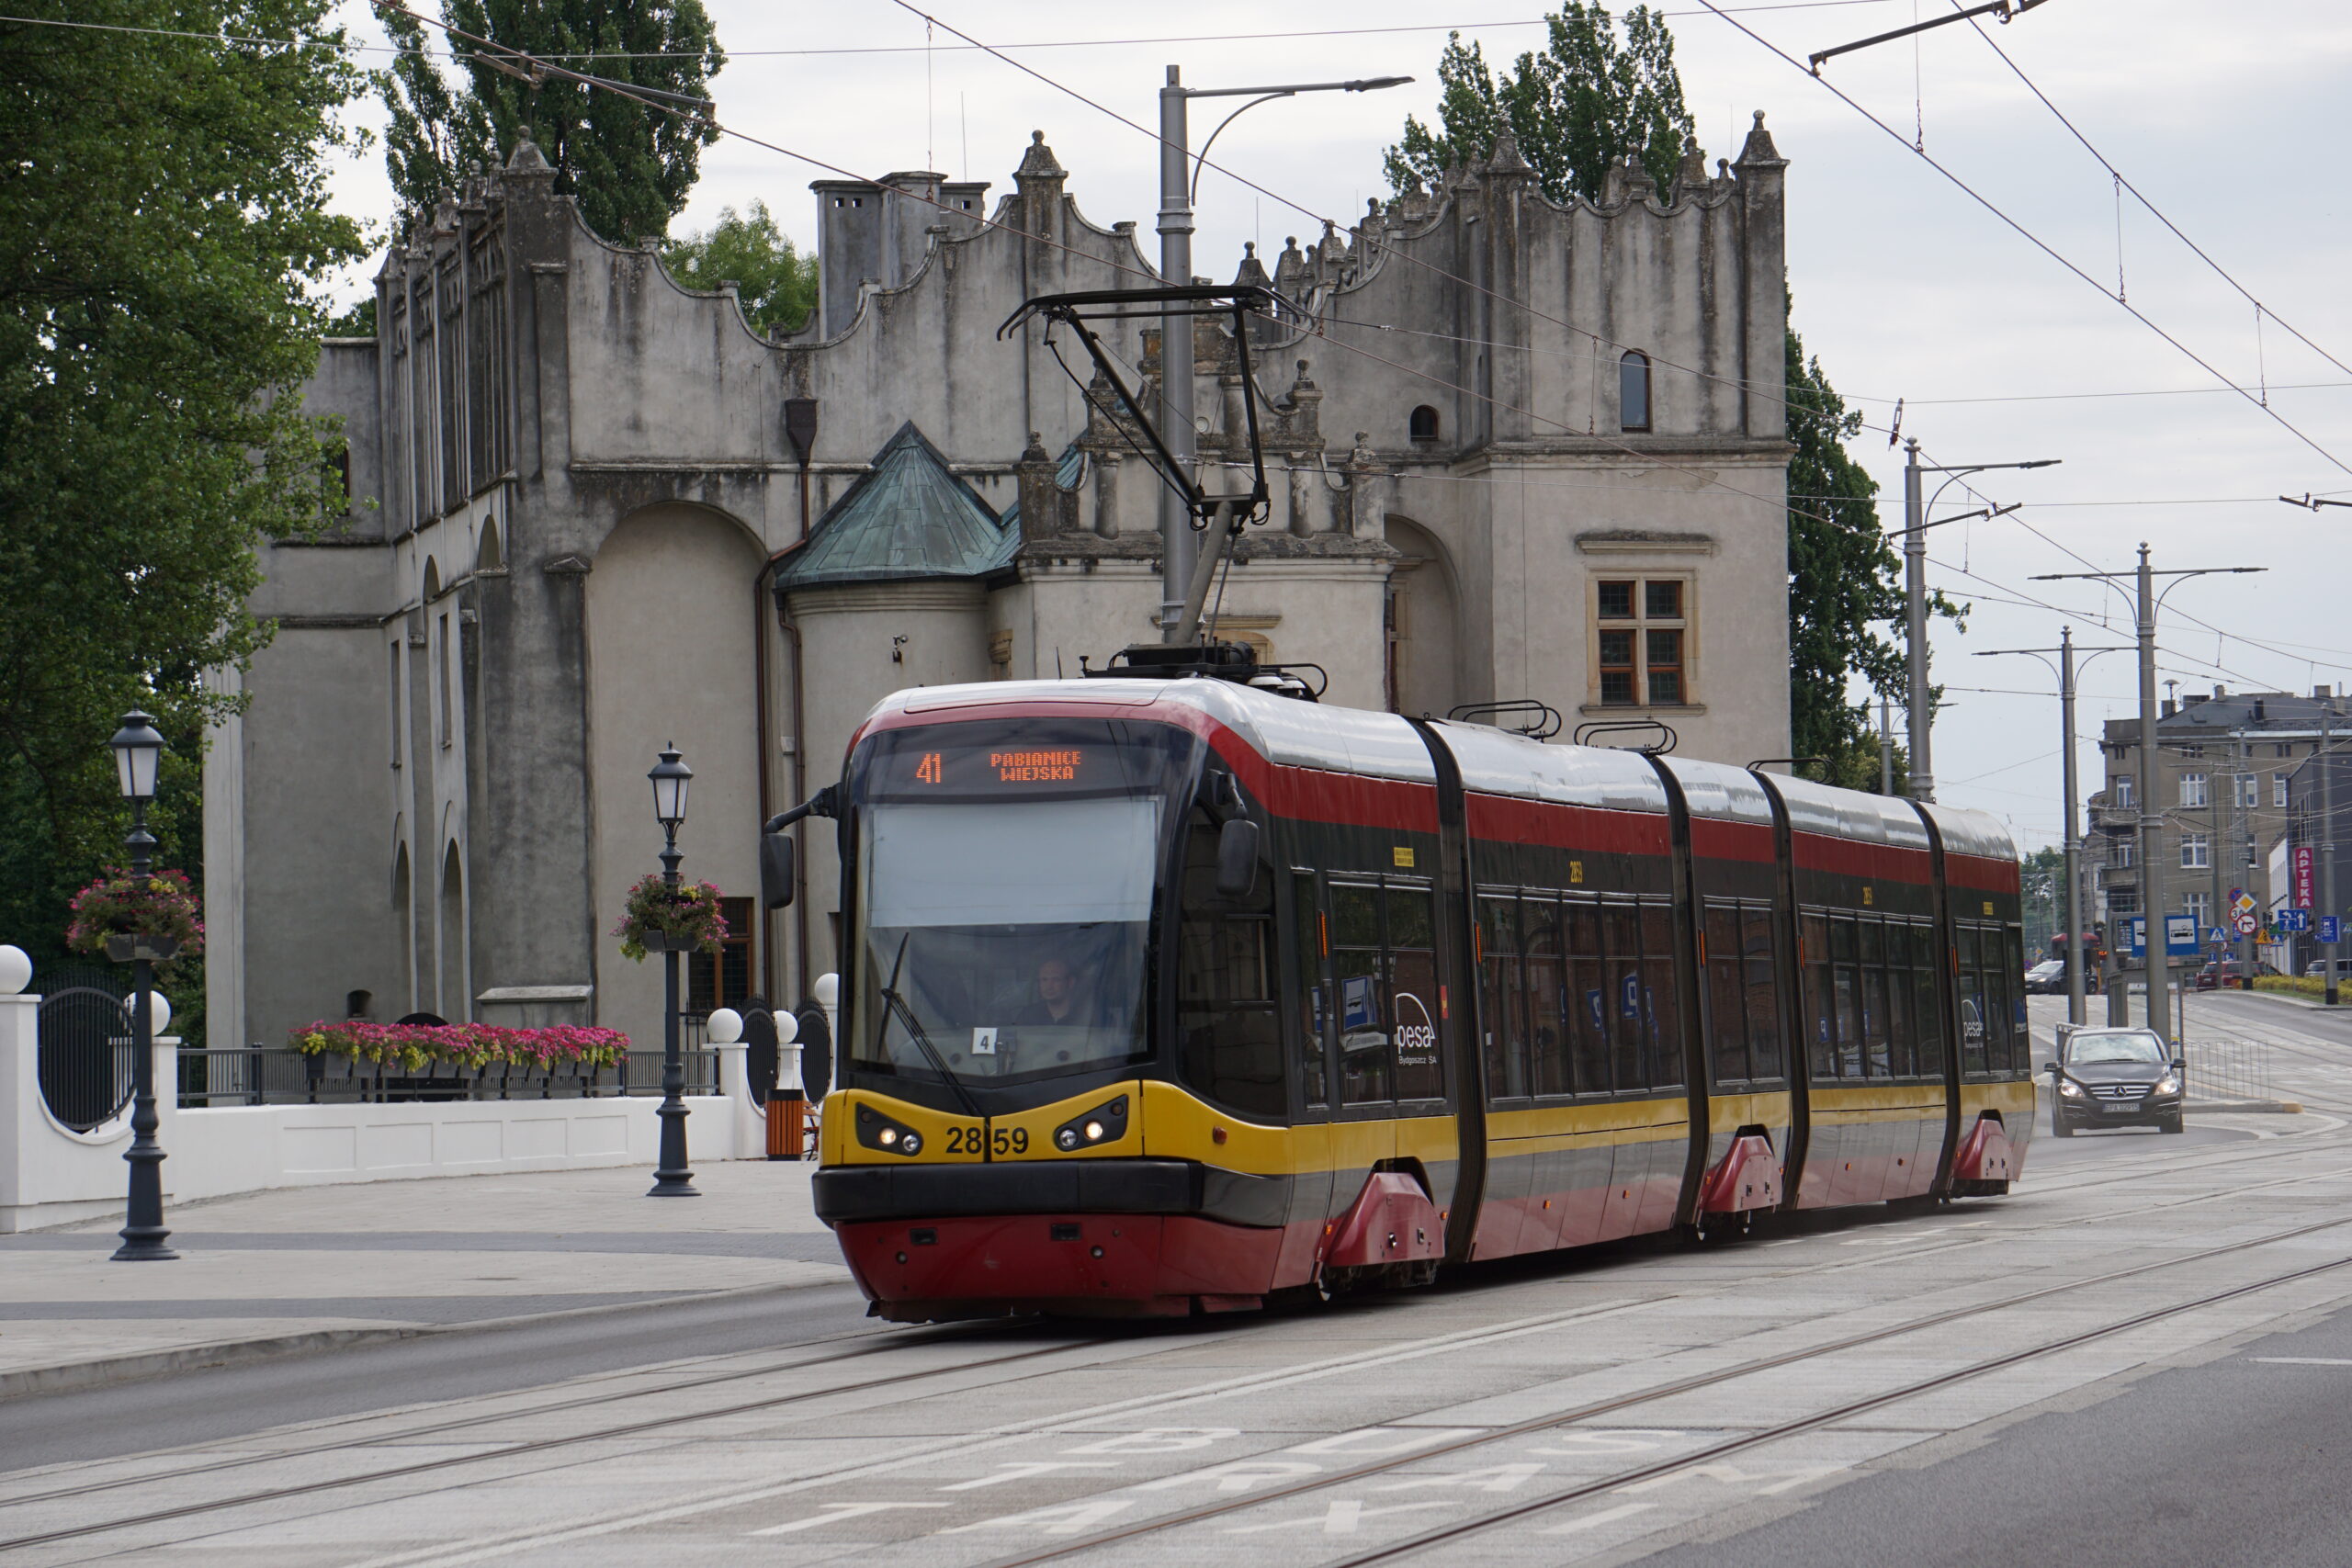 NASZA SONDA: Czy cieszymy się z powrotu tramwaju do Pabianic?